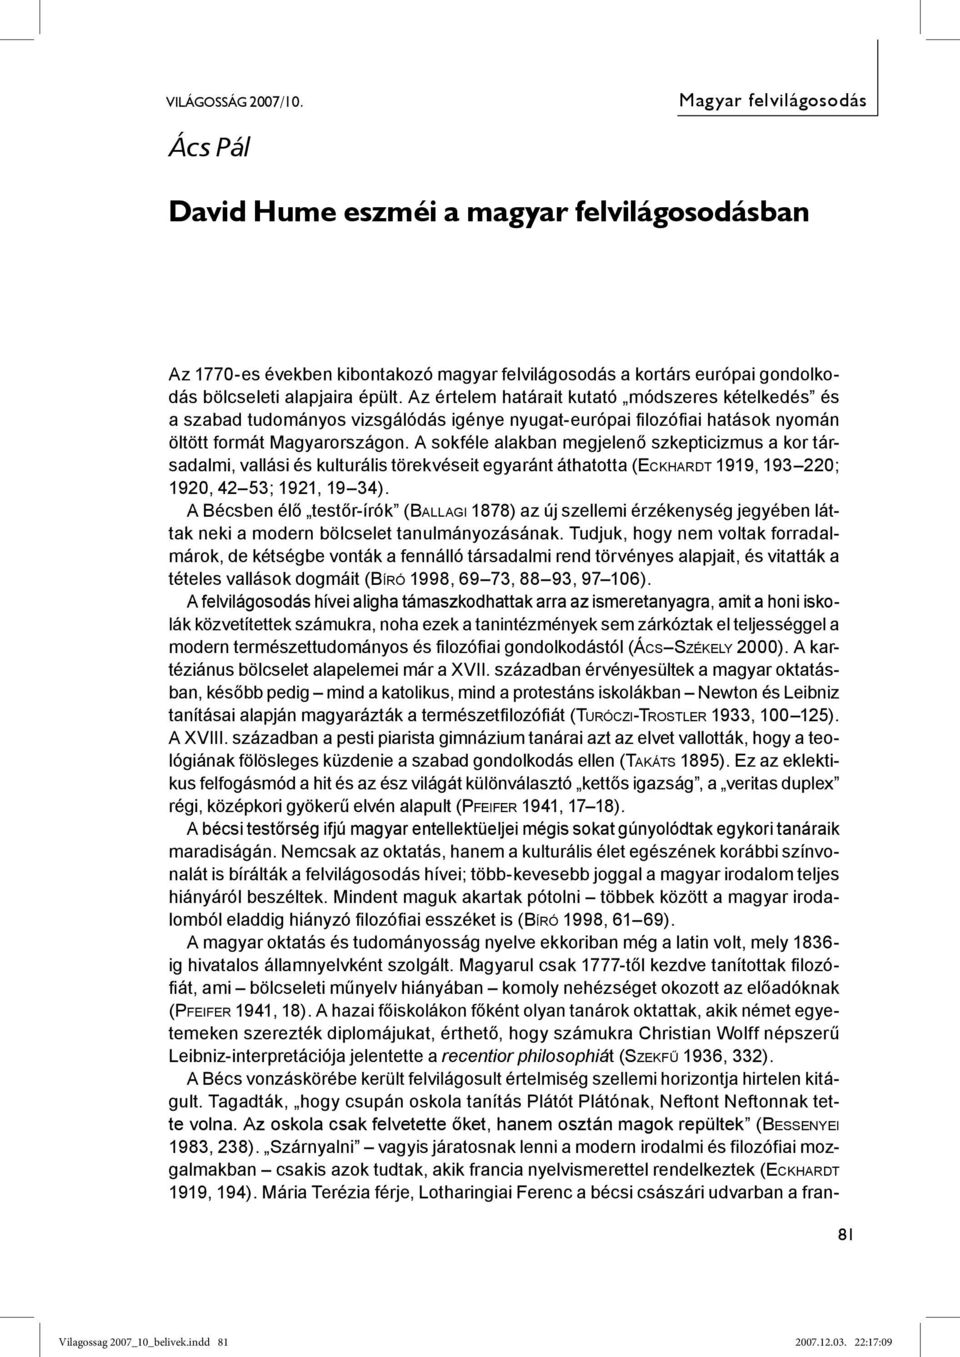 David Hume eszméi a magyar felvilágosodásban - PDF Ingyenes letöltés